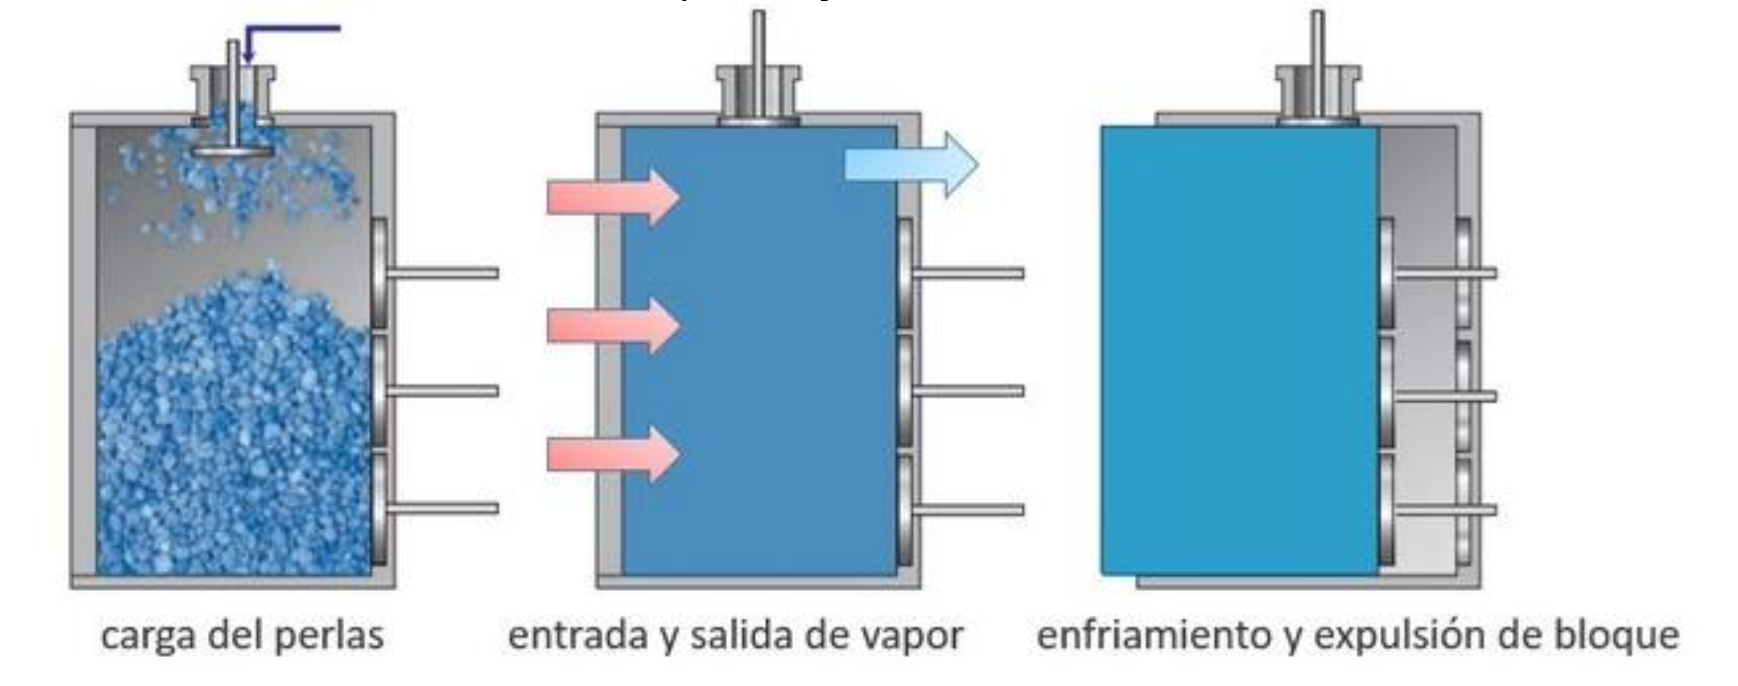 Sistema de refrigeración maquinaría proceso productivo